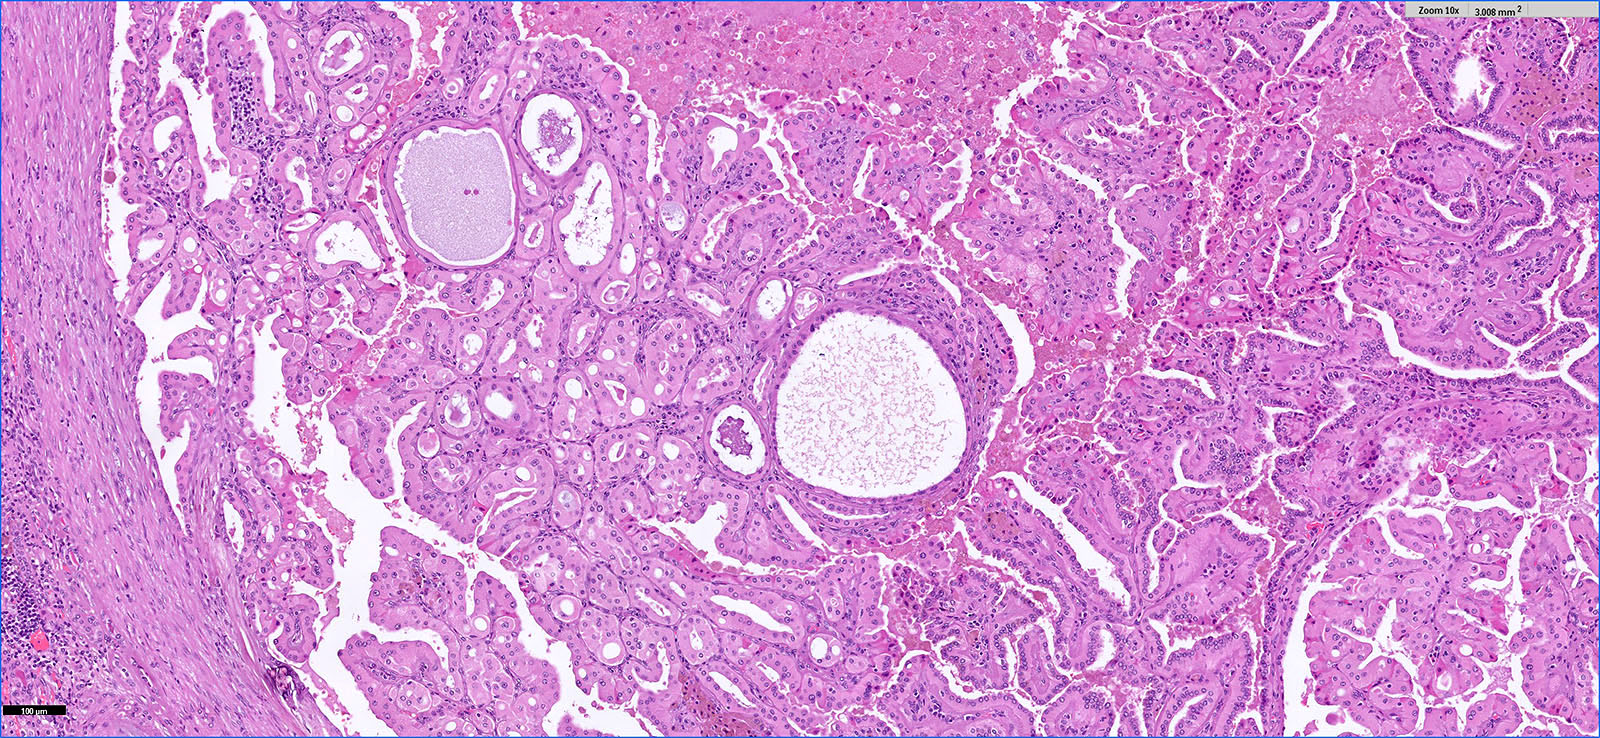 Tubulopapillary pattern